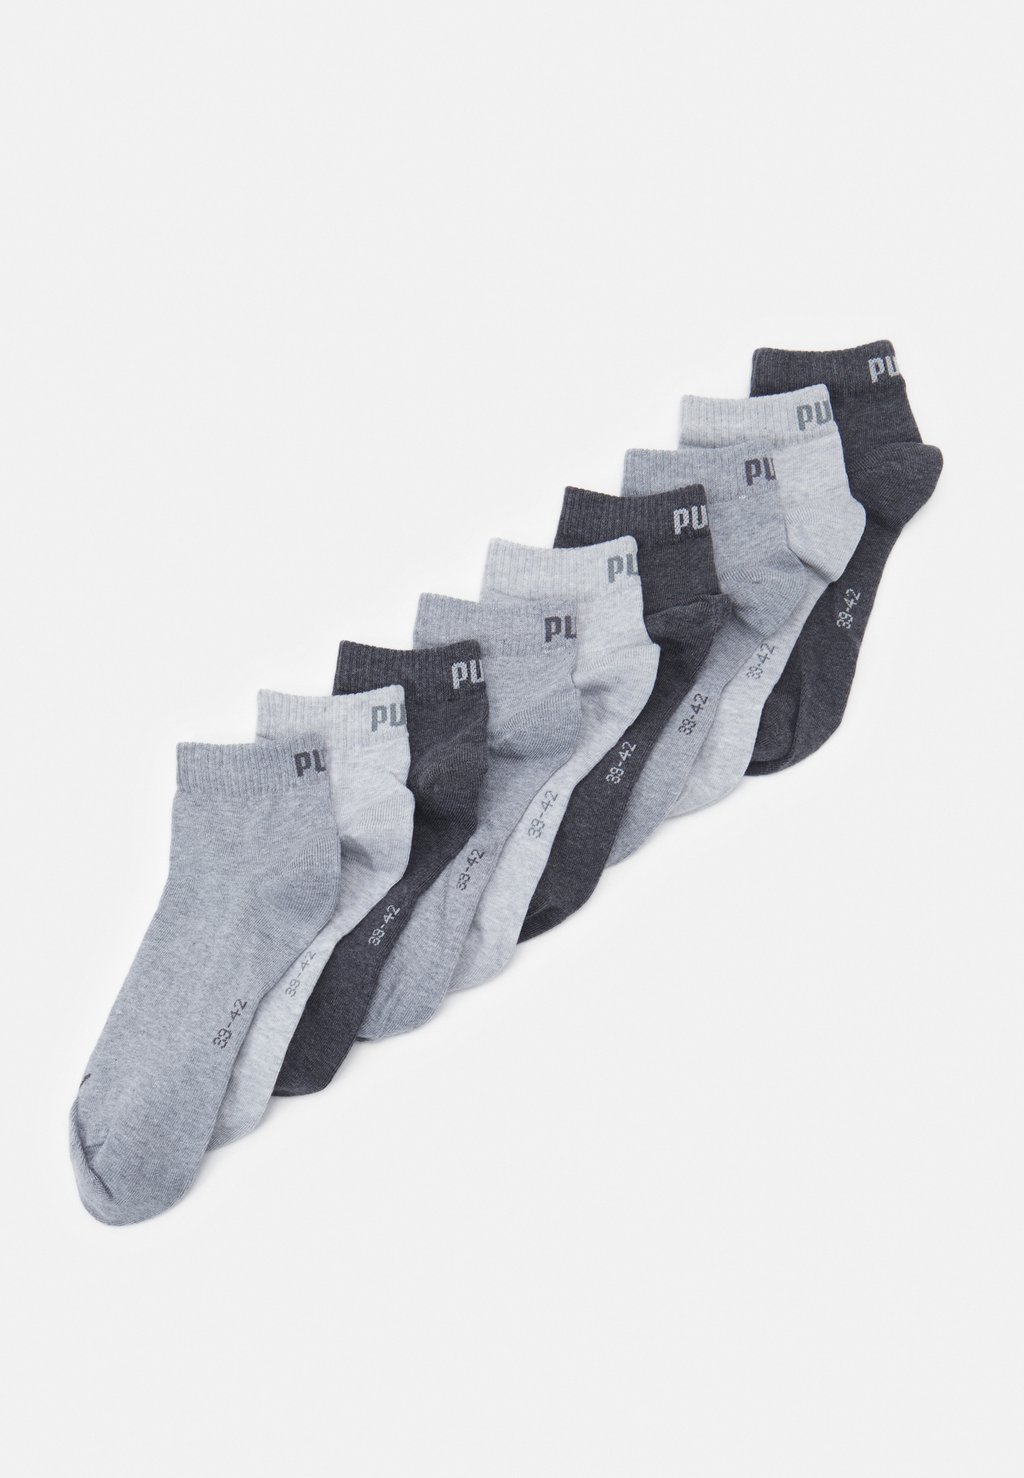 Спортивные носки Puma носки 9 pack puma цвет anthraci l mel grey m me